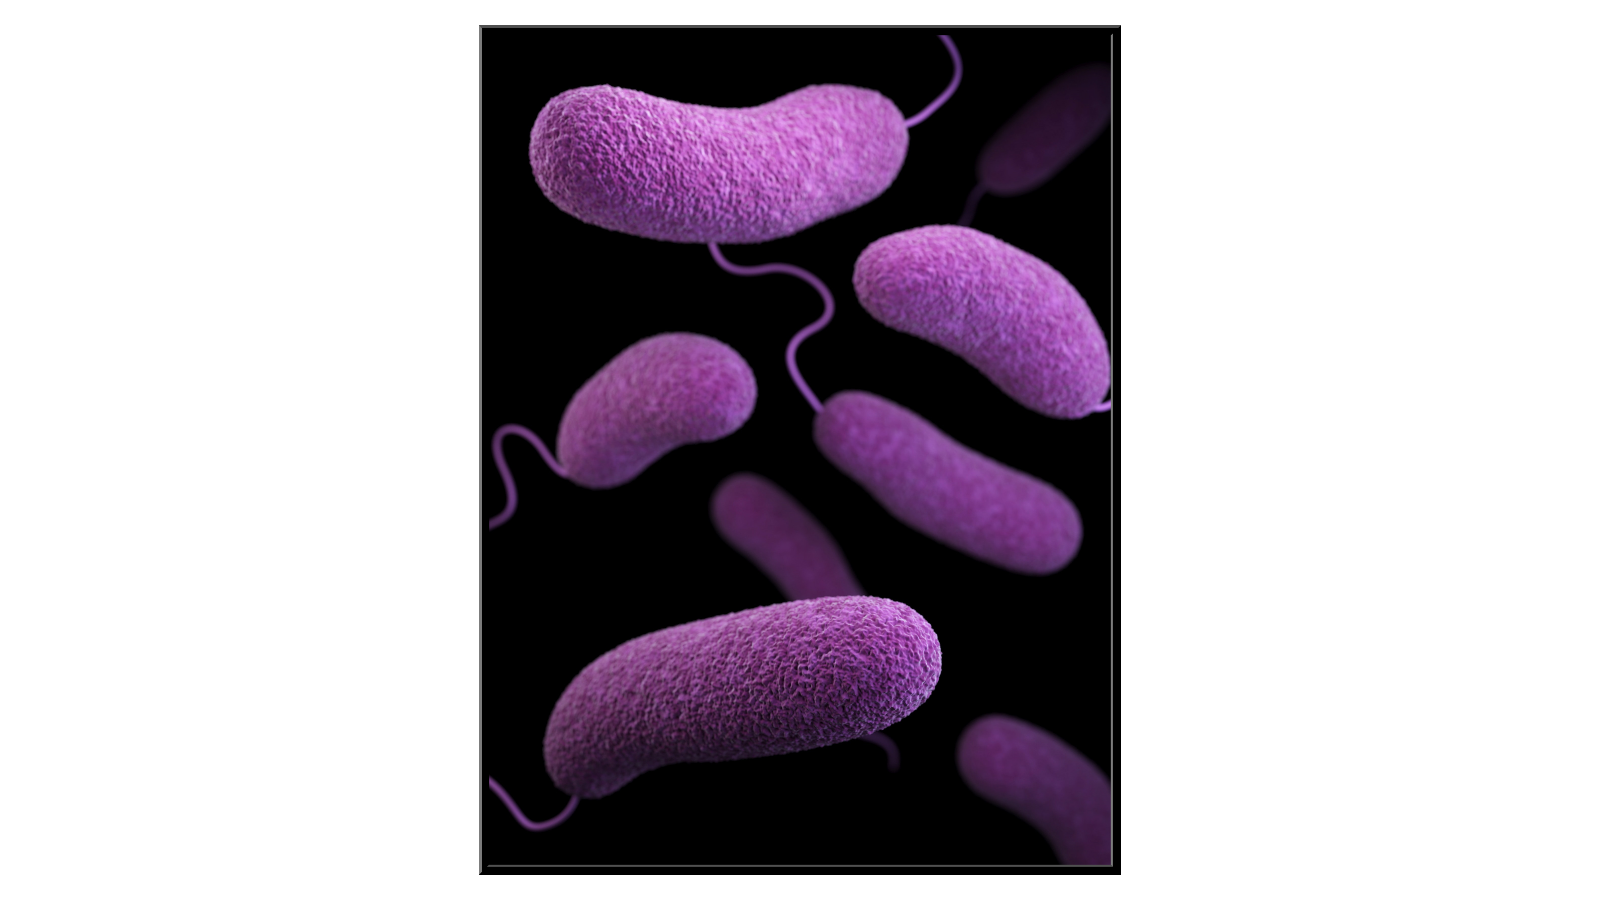 Bakteria Vibrio Parahaemolyticus